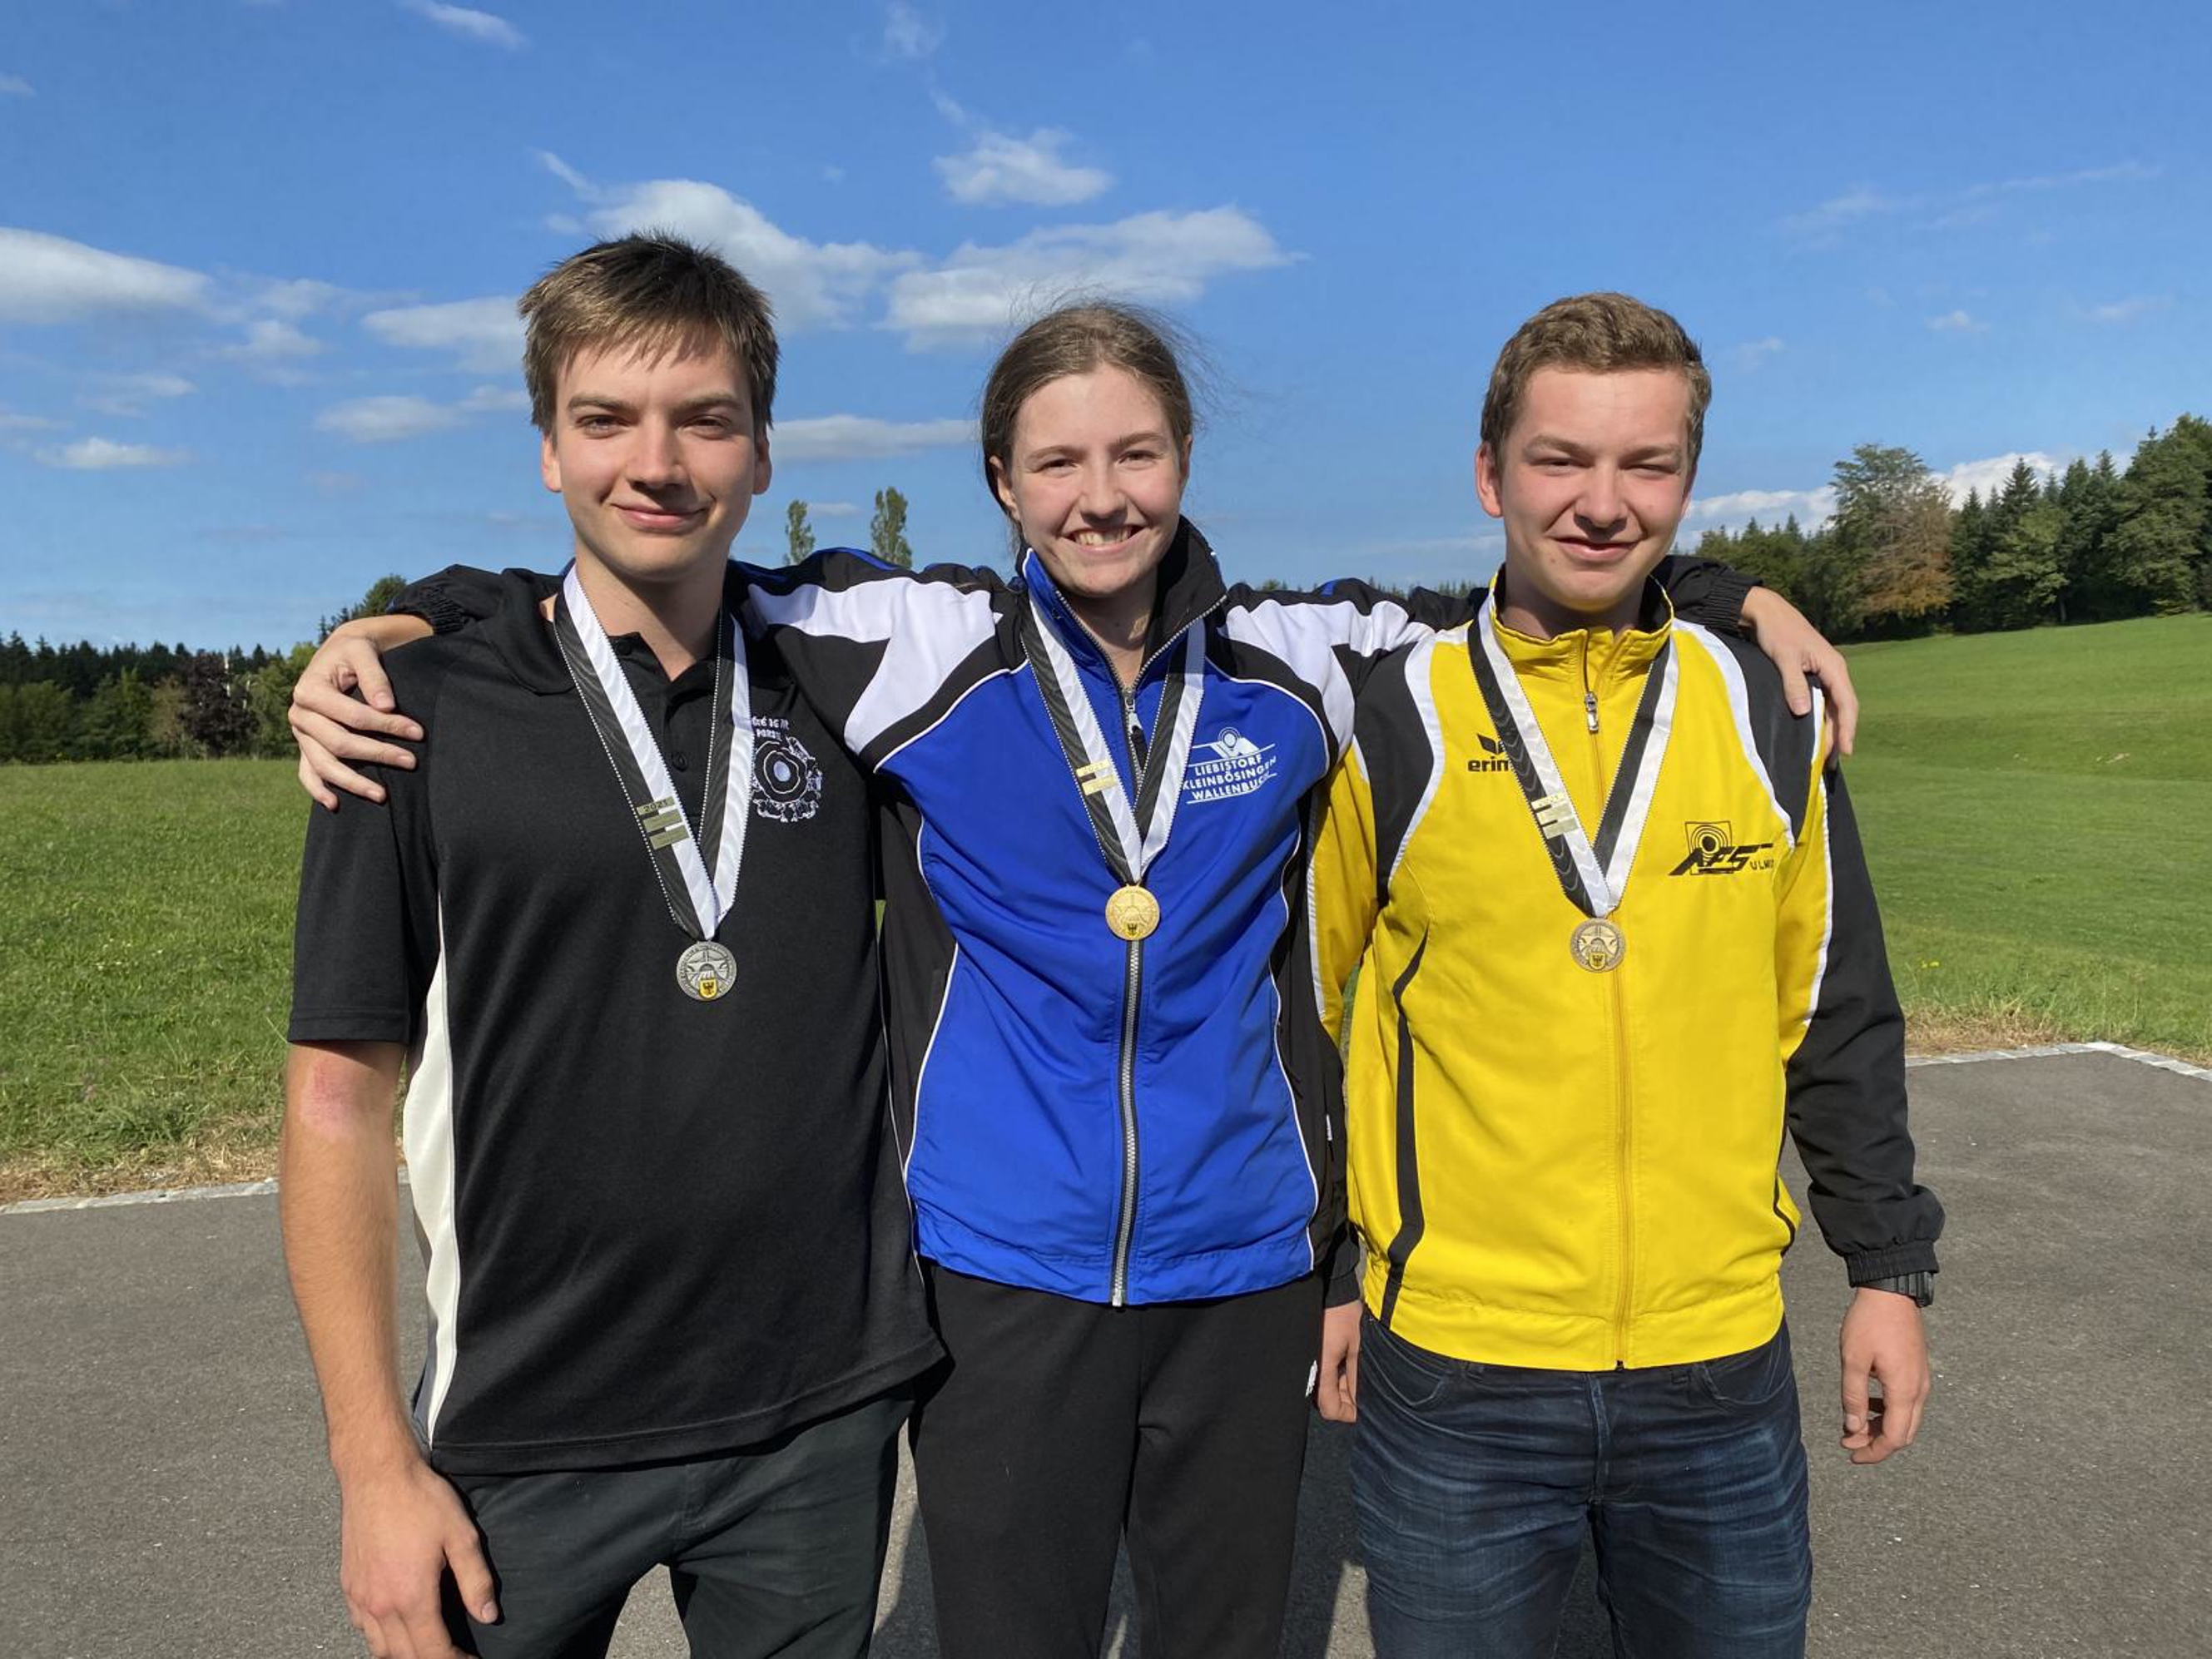 Le podium juniors avec les trois médaillés : de gauche à droite Mateo Aebischer (argent), Alina Schmutz (or) et Gabriel Koch (bronze).